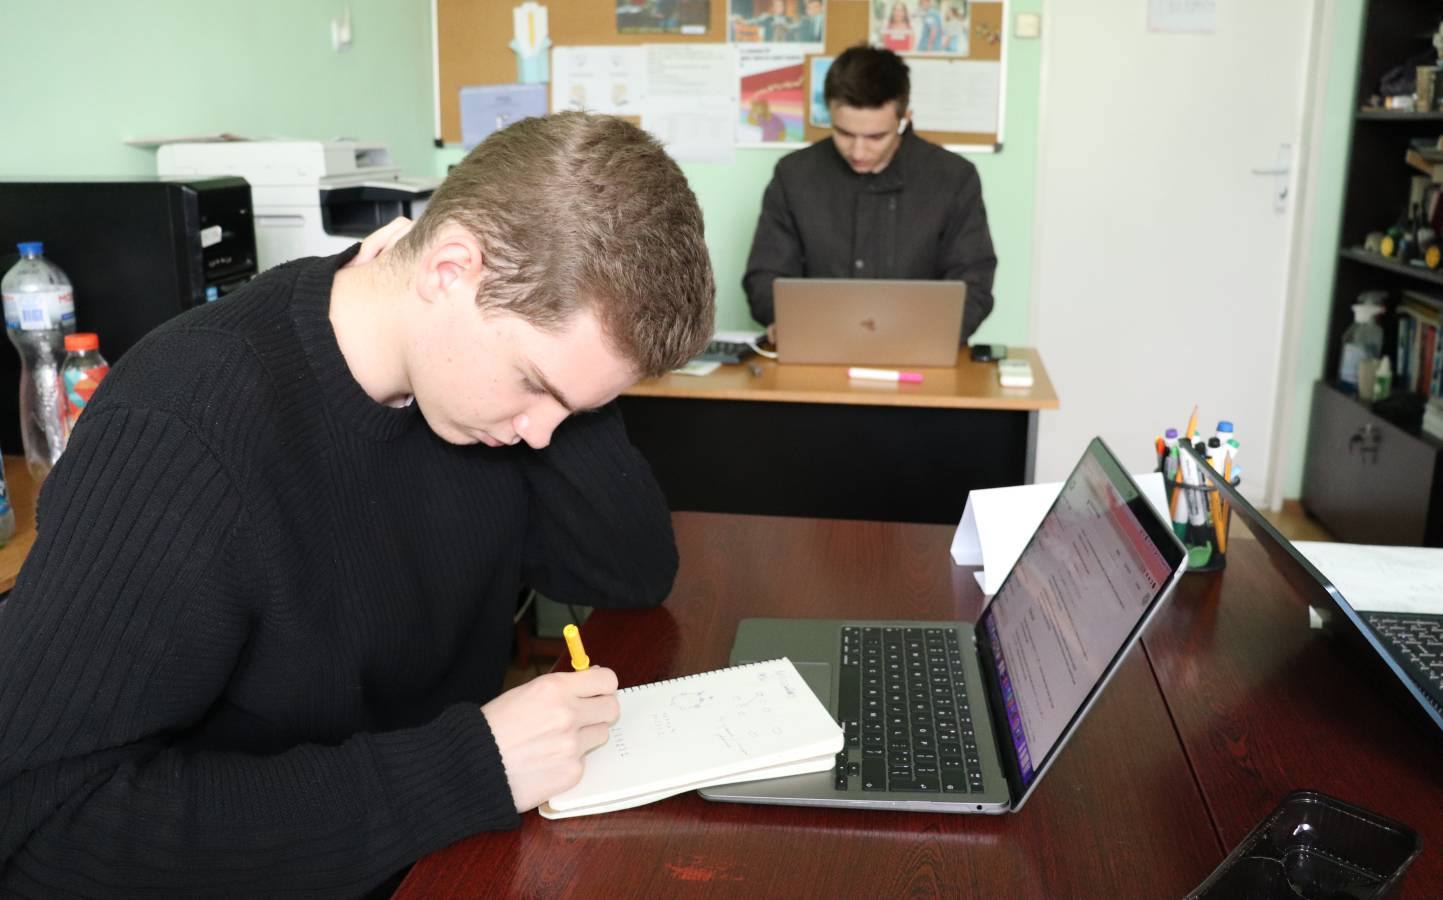 Відбувся І етап Всеукраїнської студентської олімпіади з програмування